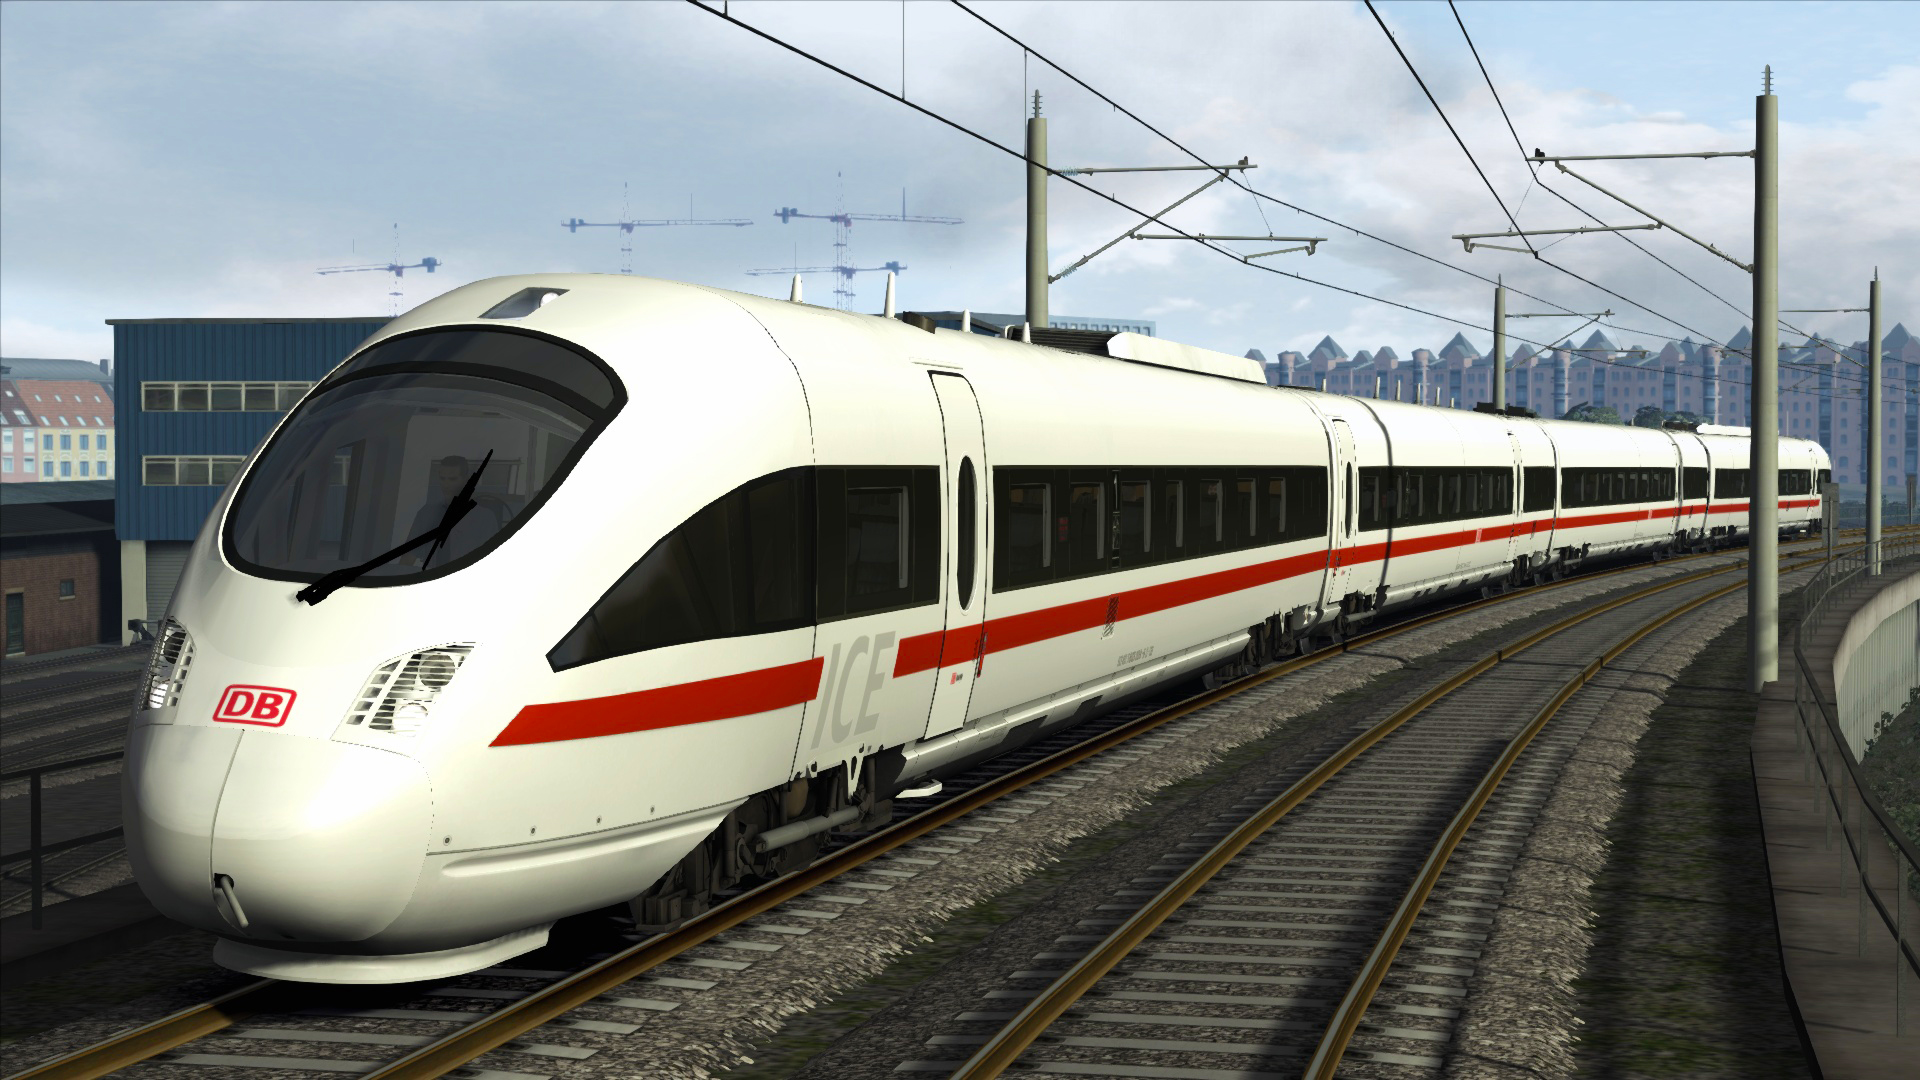 Train Simulator - DB BR 605 ICE TD Add-On DLC Steam CD Key 1.34 usd